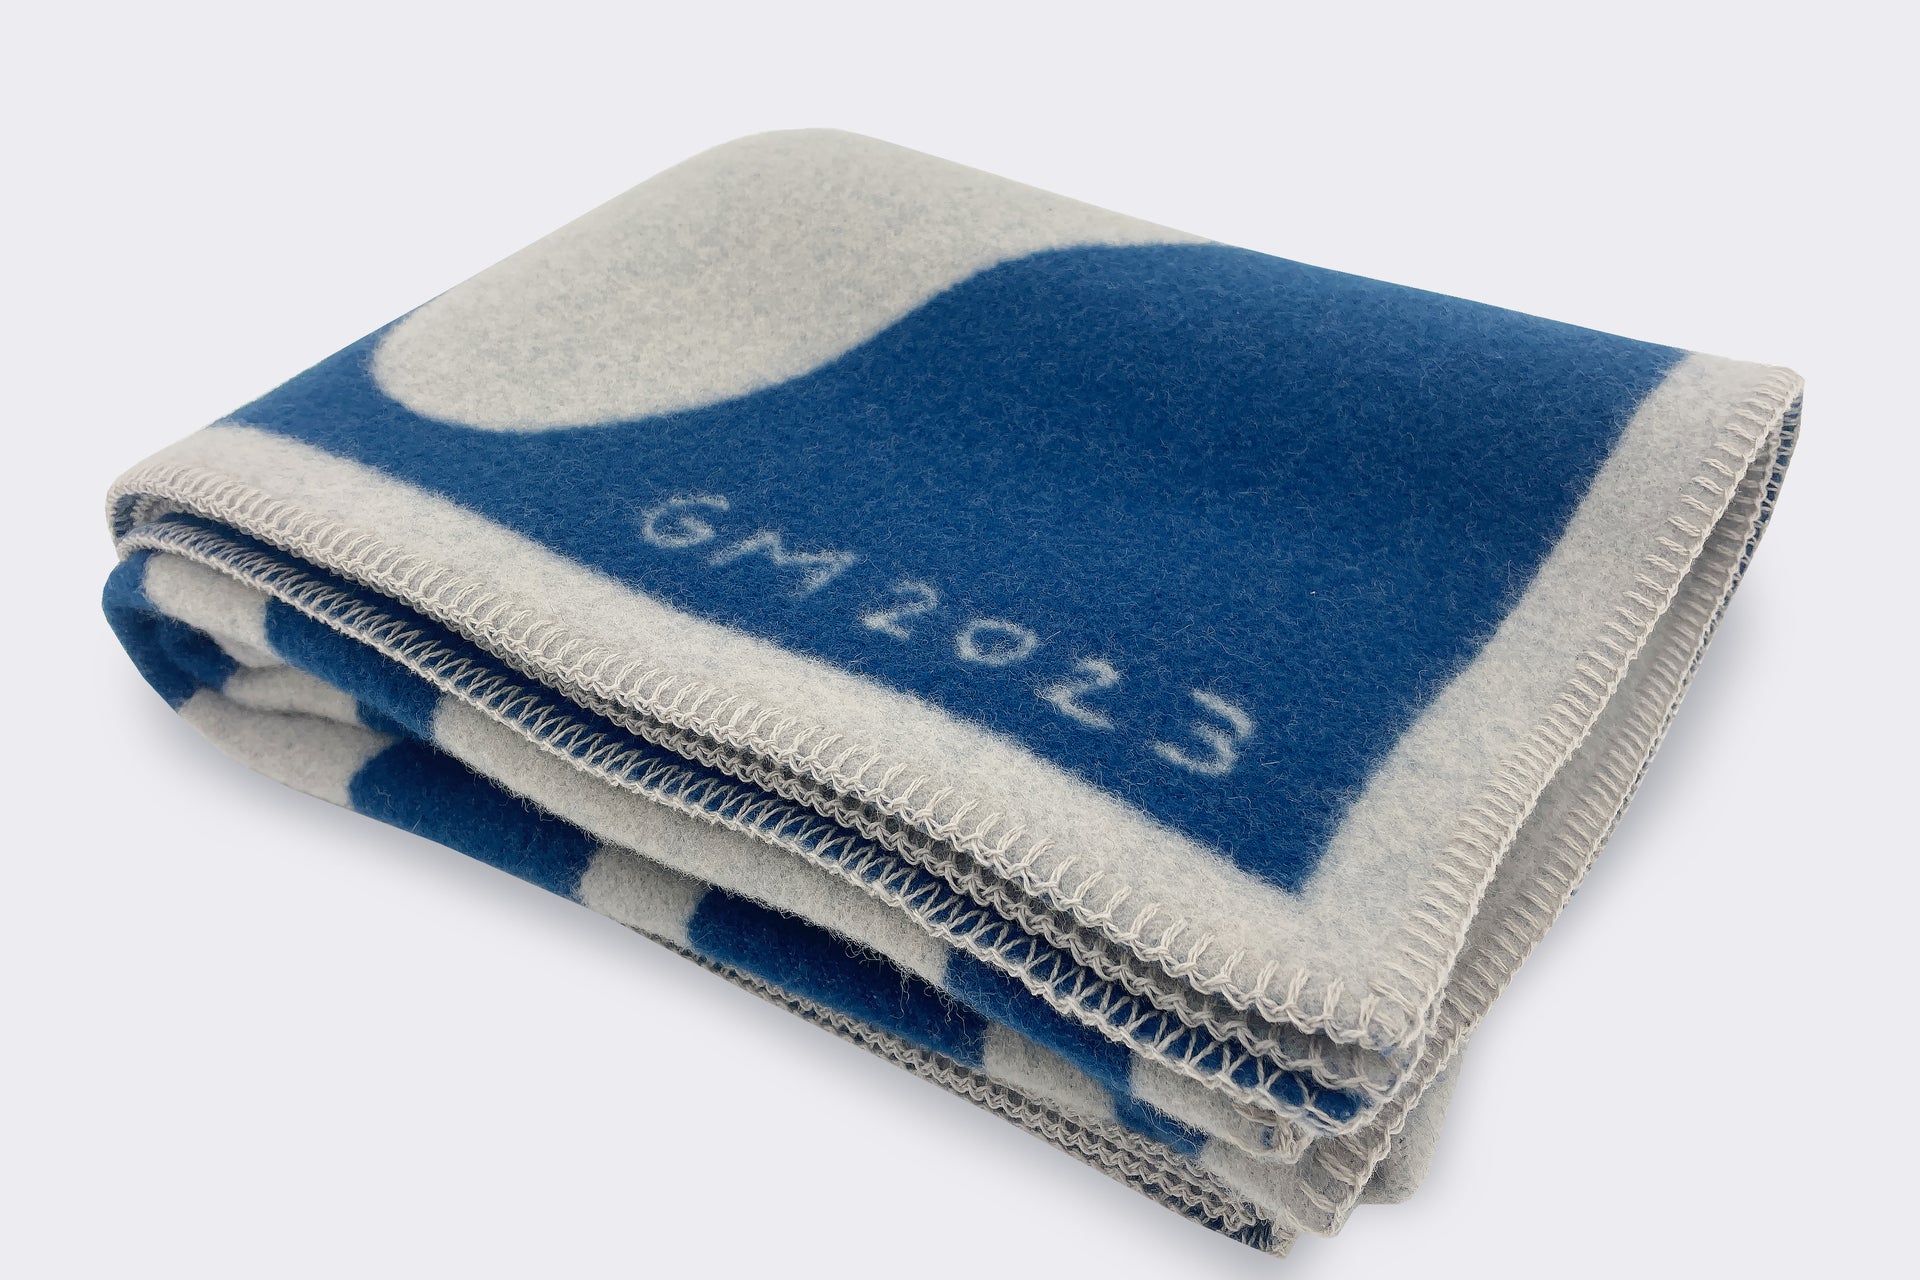 Geoff McFetridge's The Organic Interface Heavy Wool Blanket on HypeArt